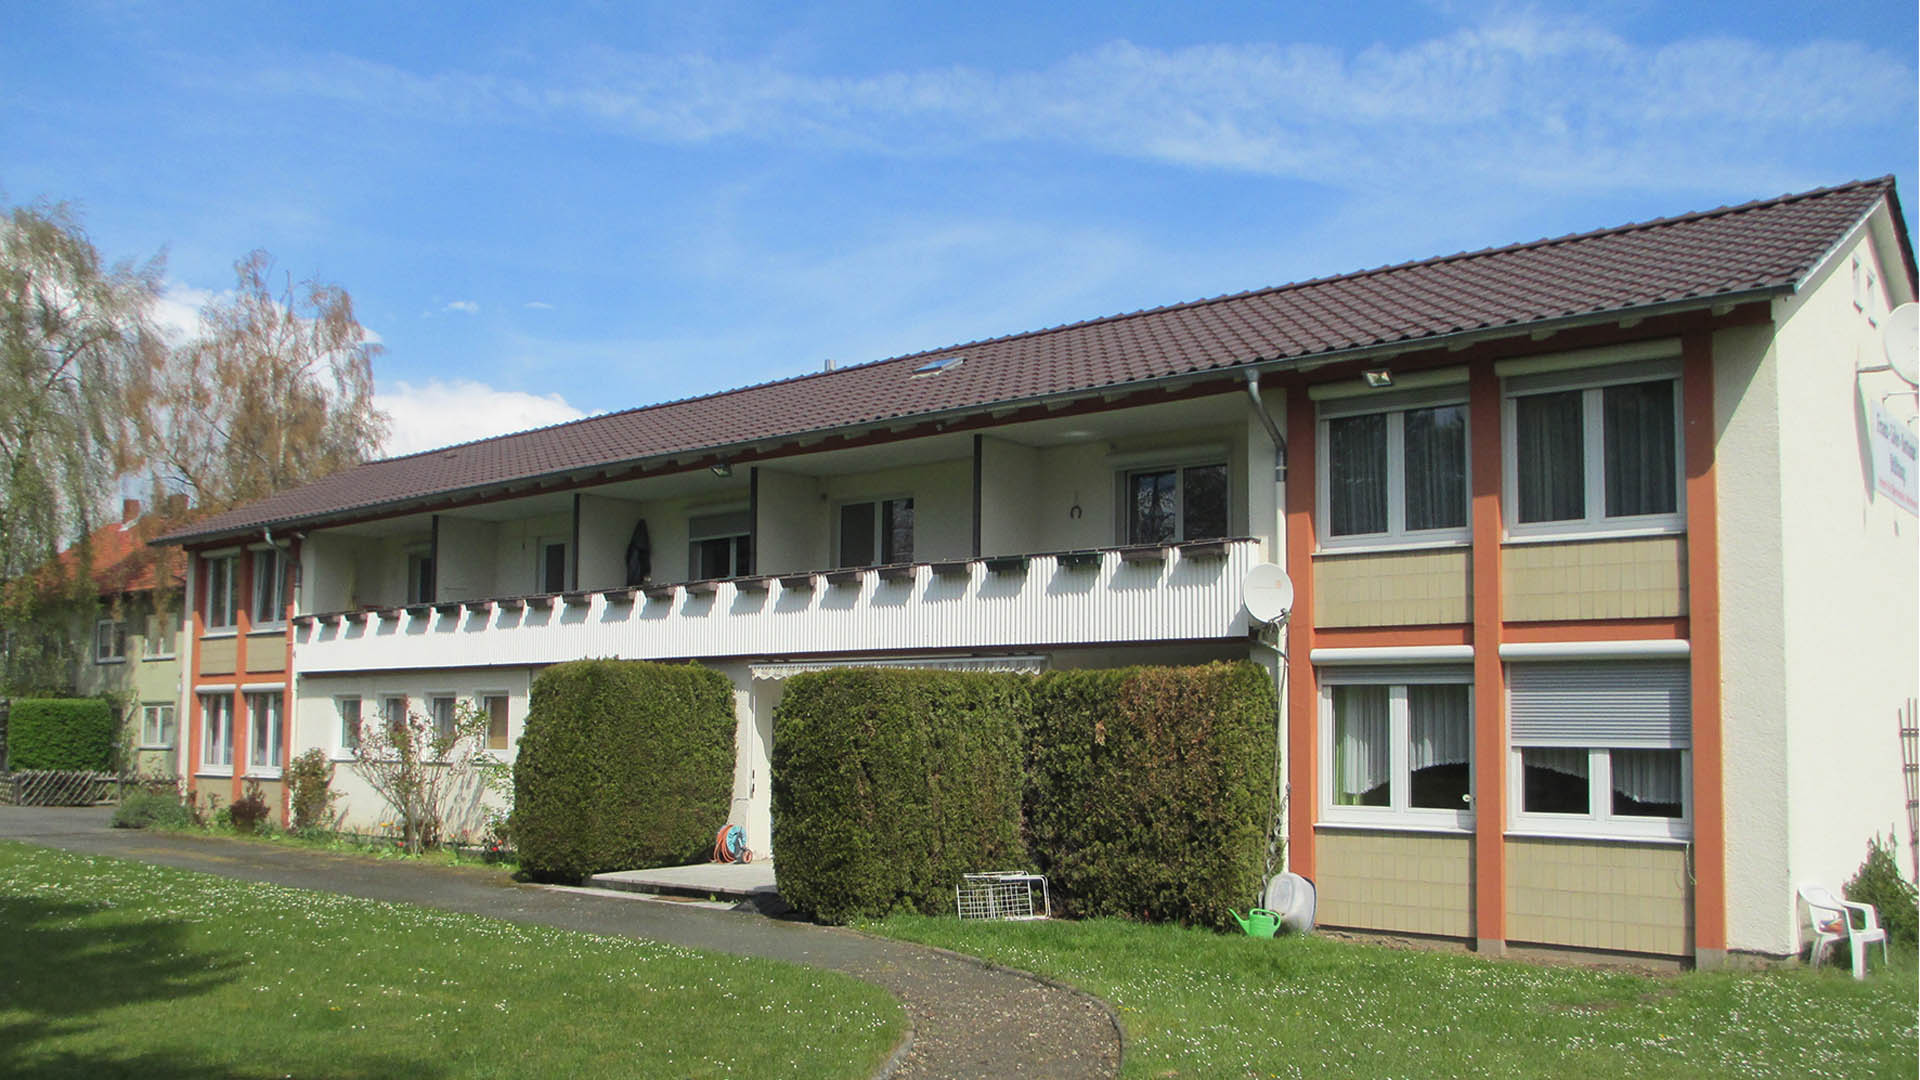 Blick auf das Alters-Wohnheim der Franz-Löhr-Sottmar-Stiftung, ein Reihenhaus mit mehreren Wohneinheiten.